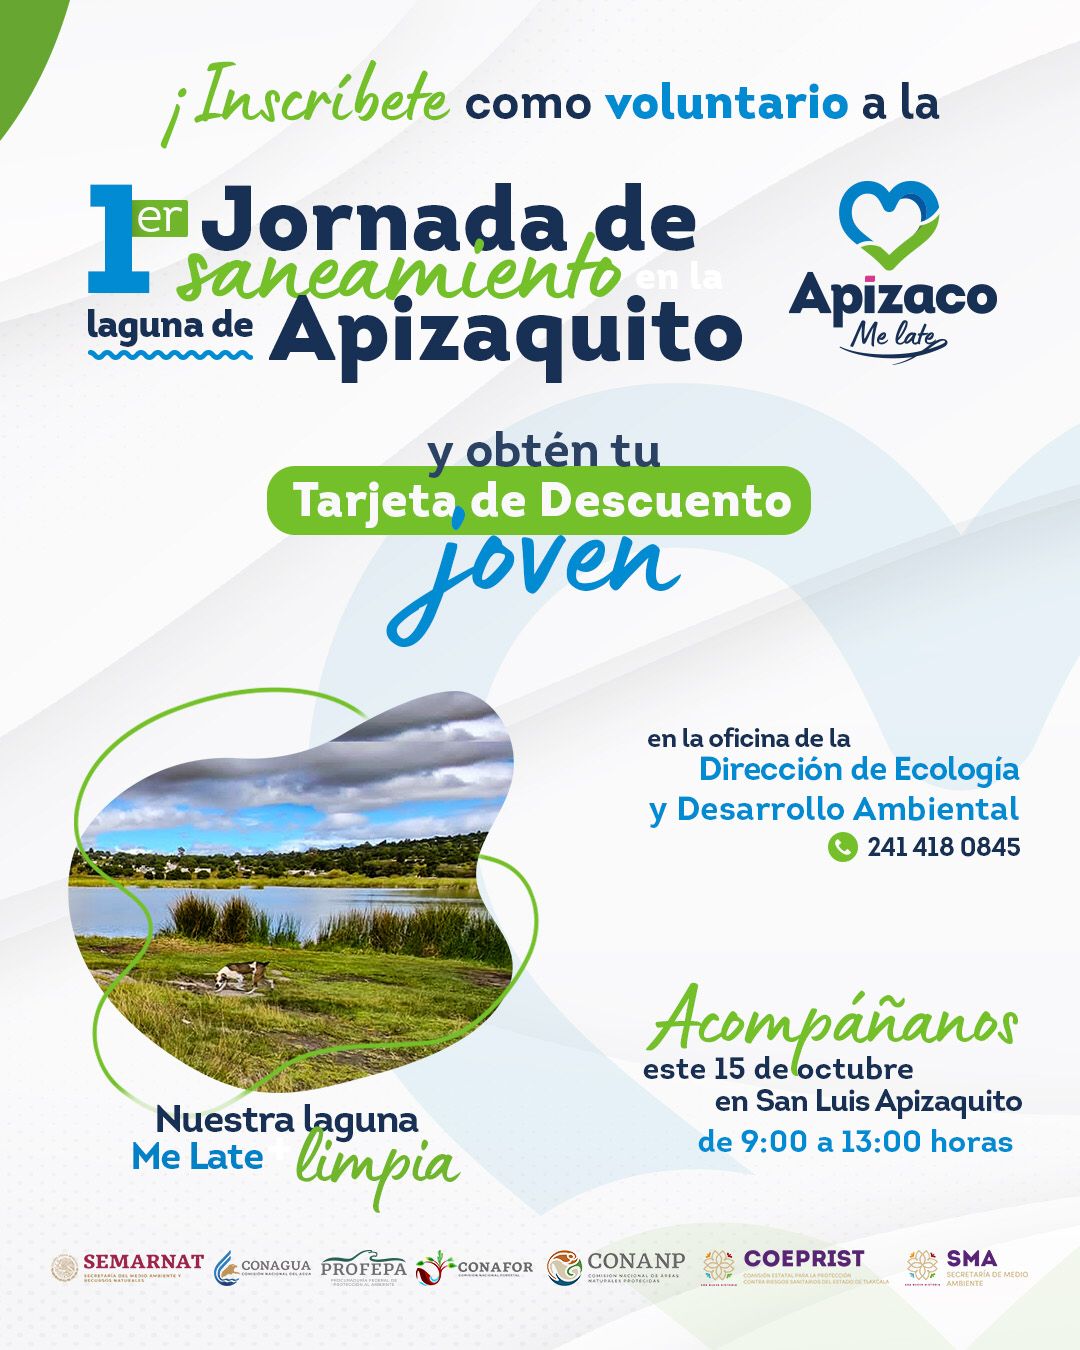 Invitan a jornada de limpieza de la laguna de Apizaquito